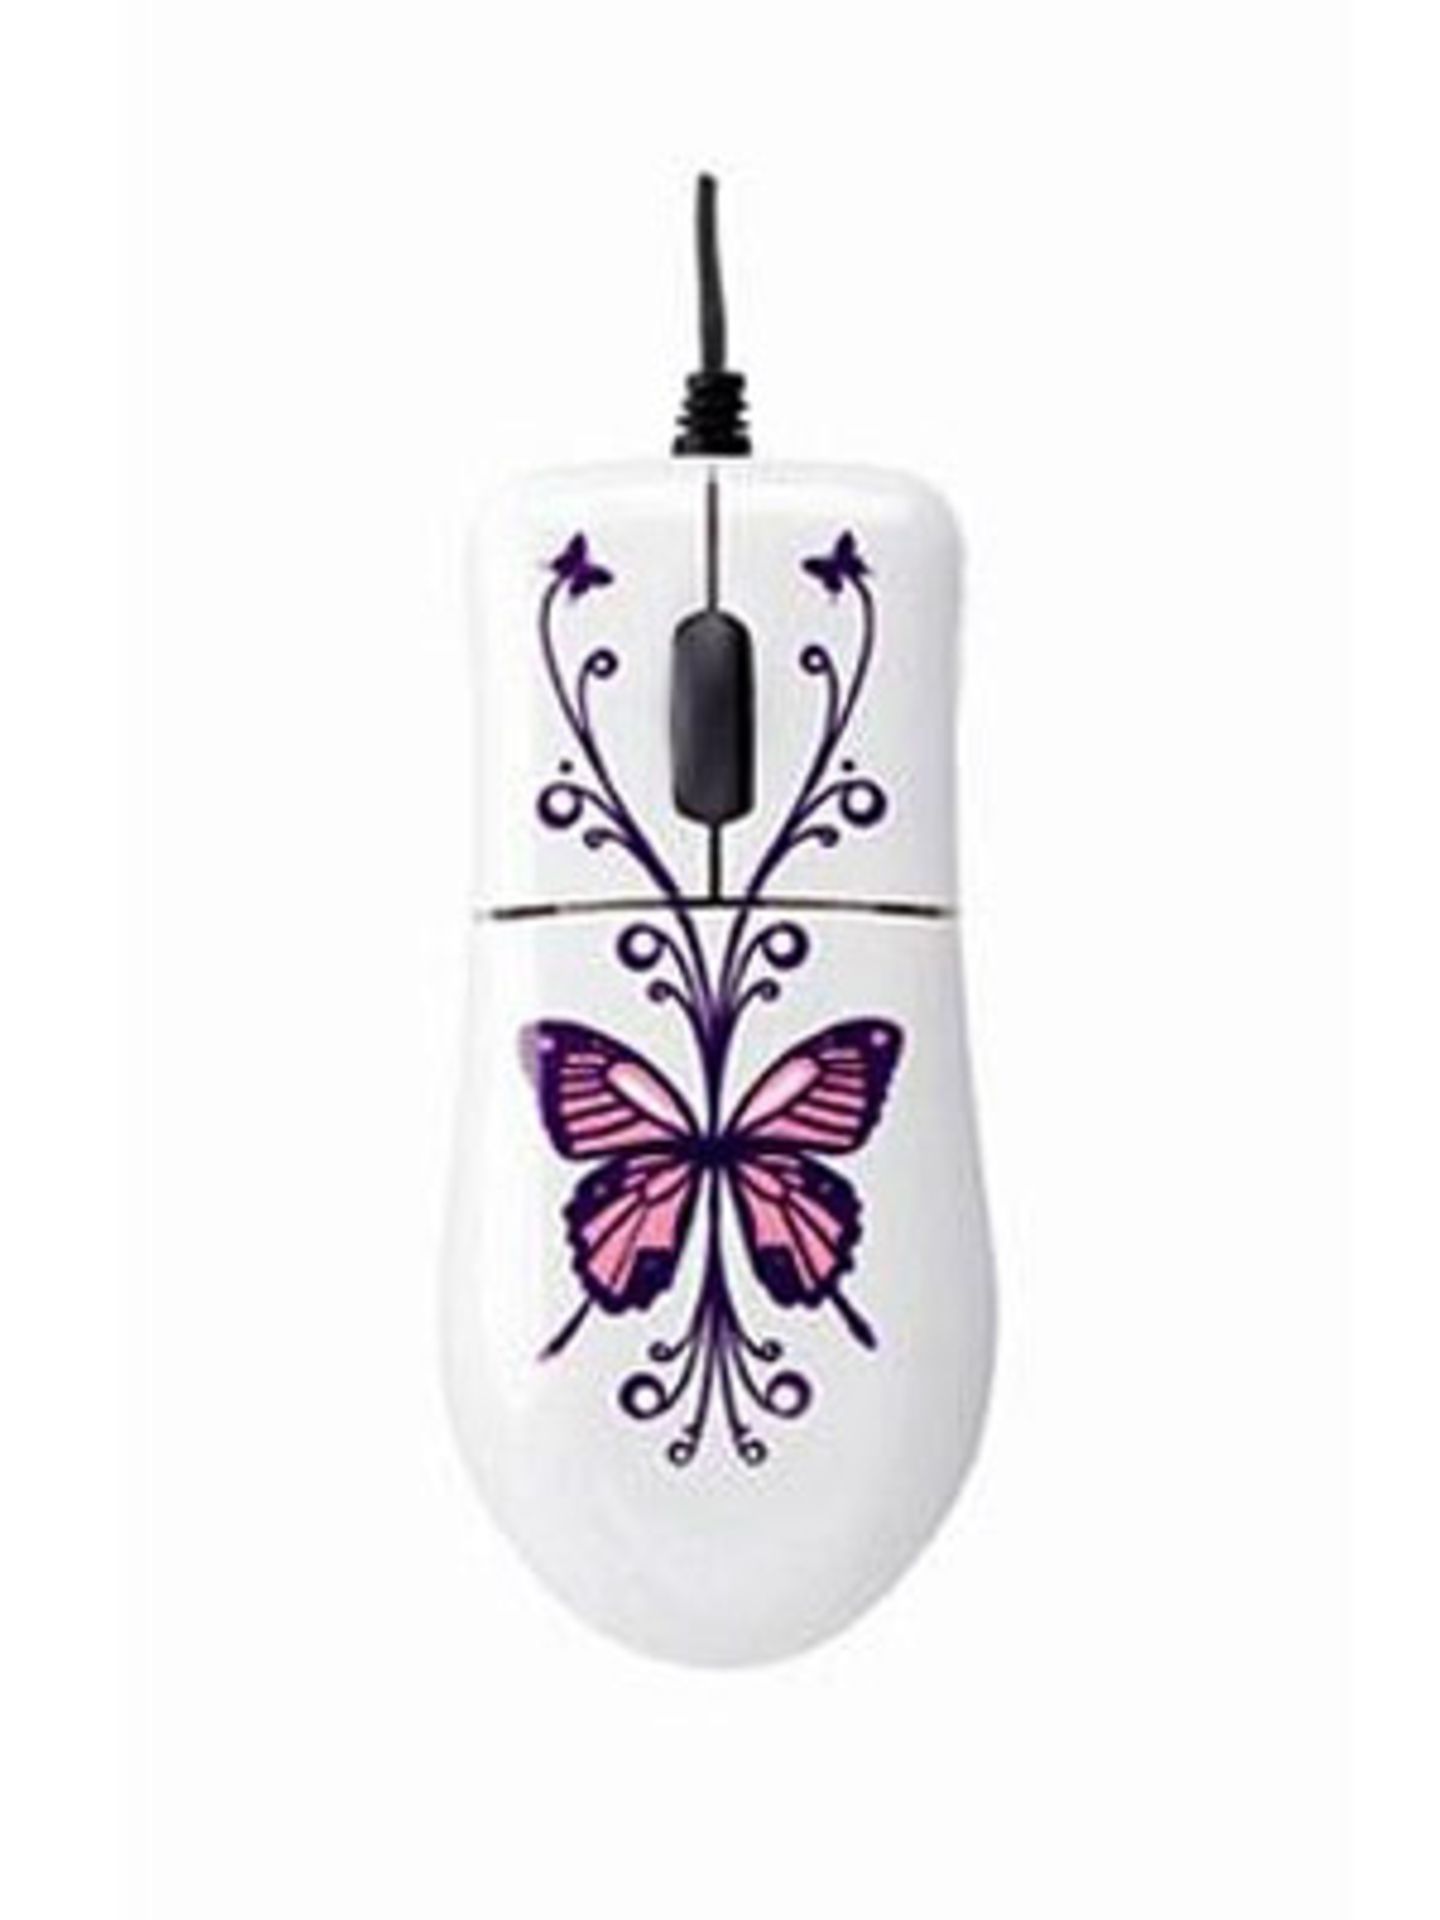 Absoluter Hingucker: Maus mit Schmetterling-Deko. Um 30 Euro bei design3000.